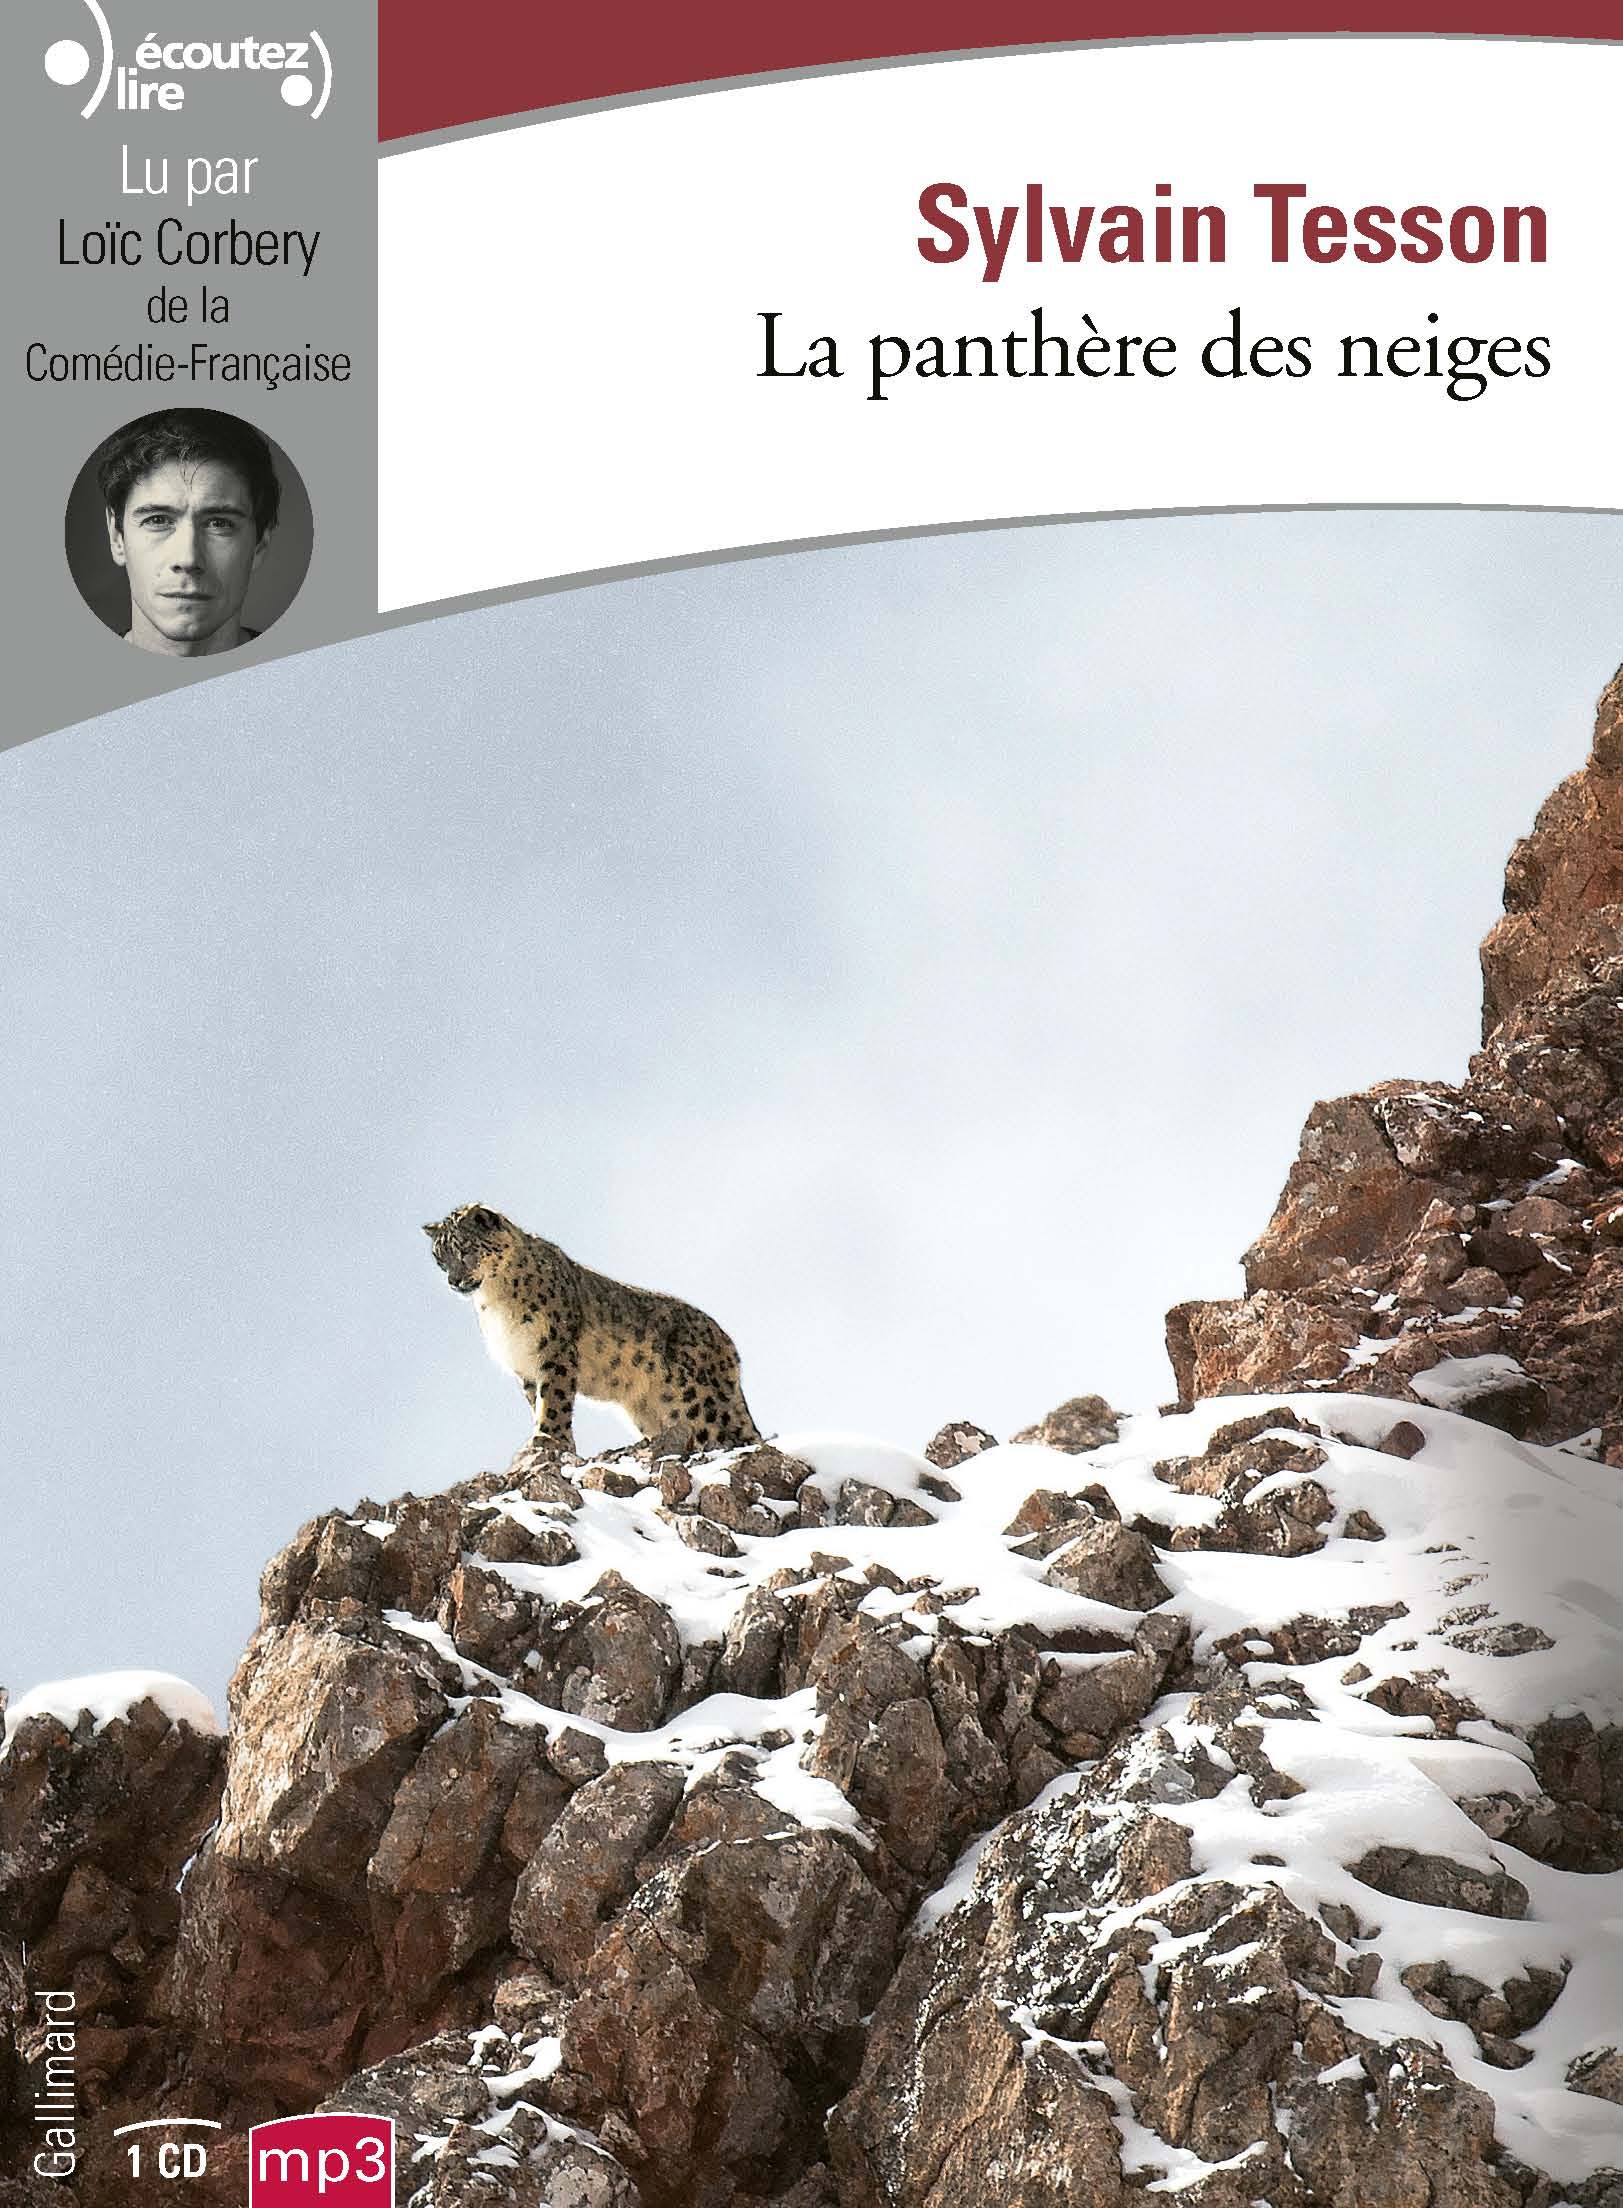 La panthère des neiges de Sylvain Tesson sort en livre lu chez Gallimard.